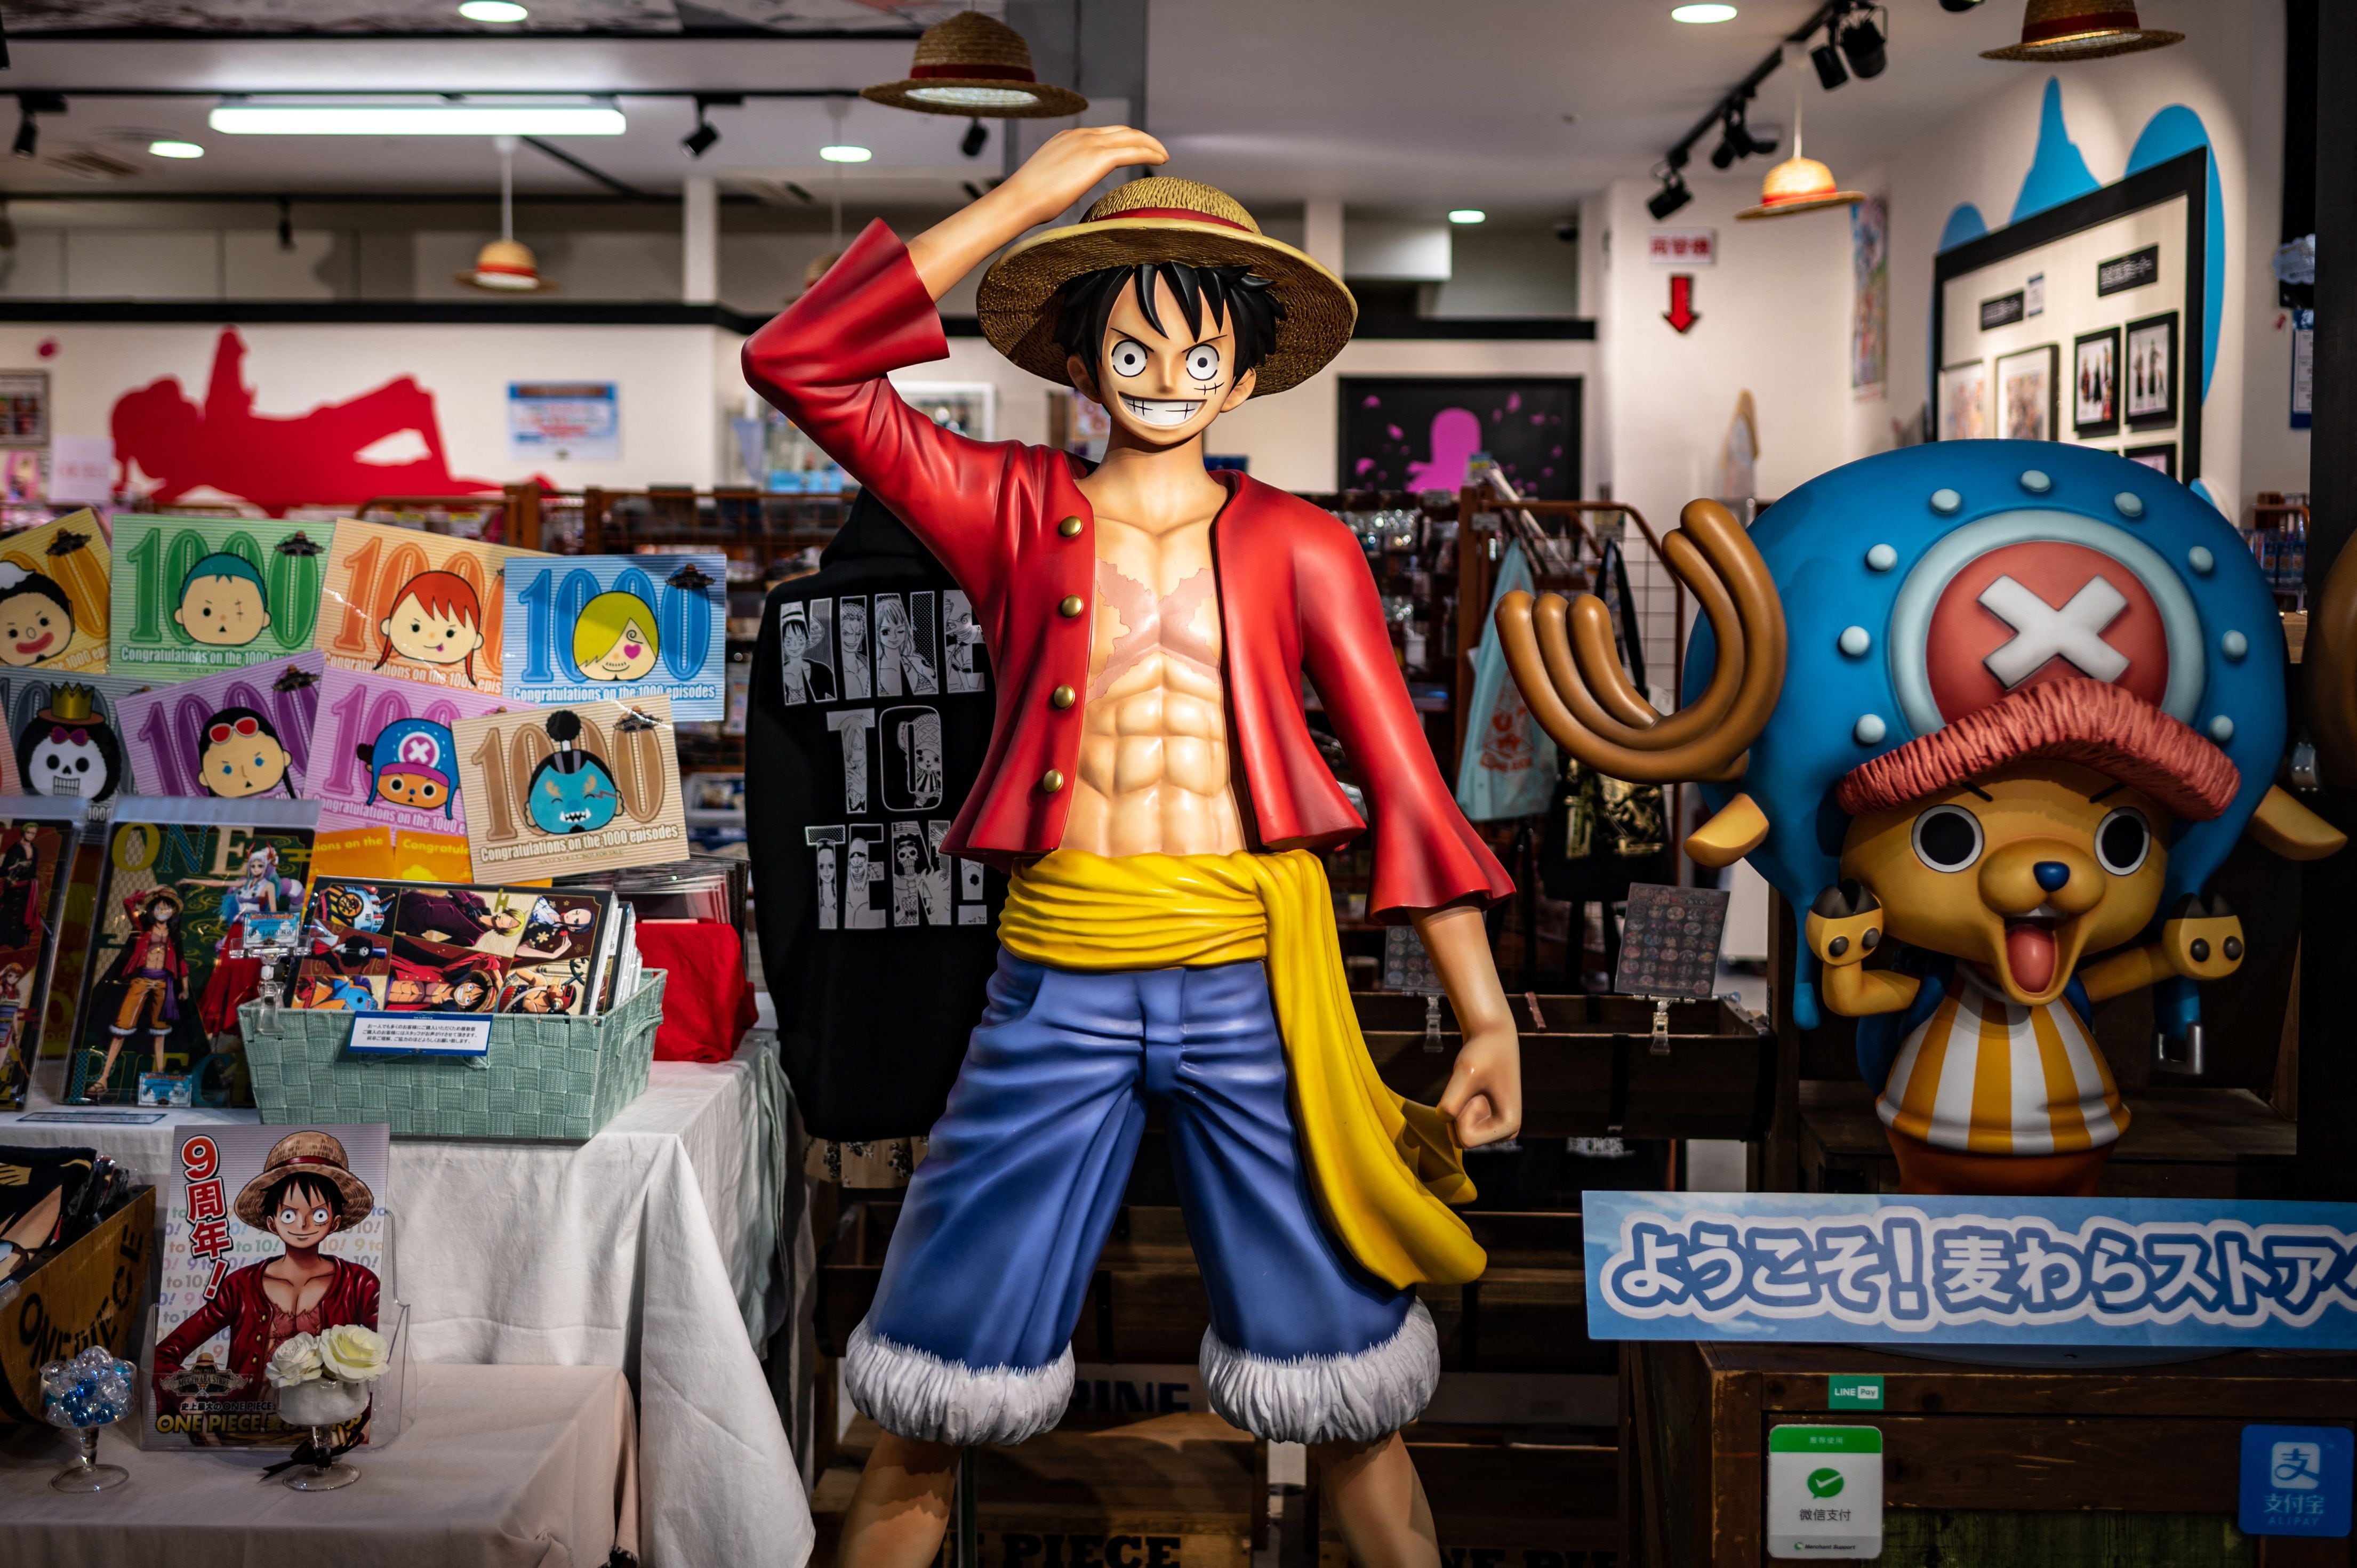 Quantos episódios tem One Piece?